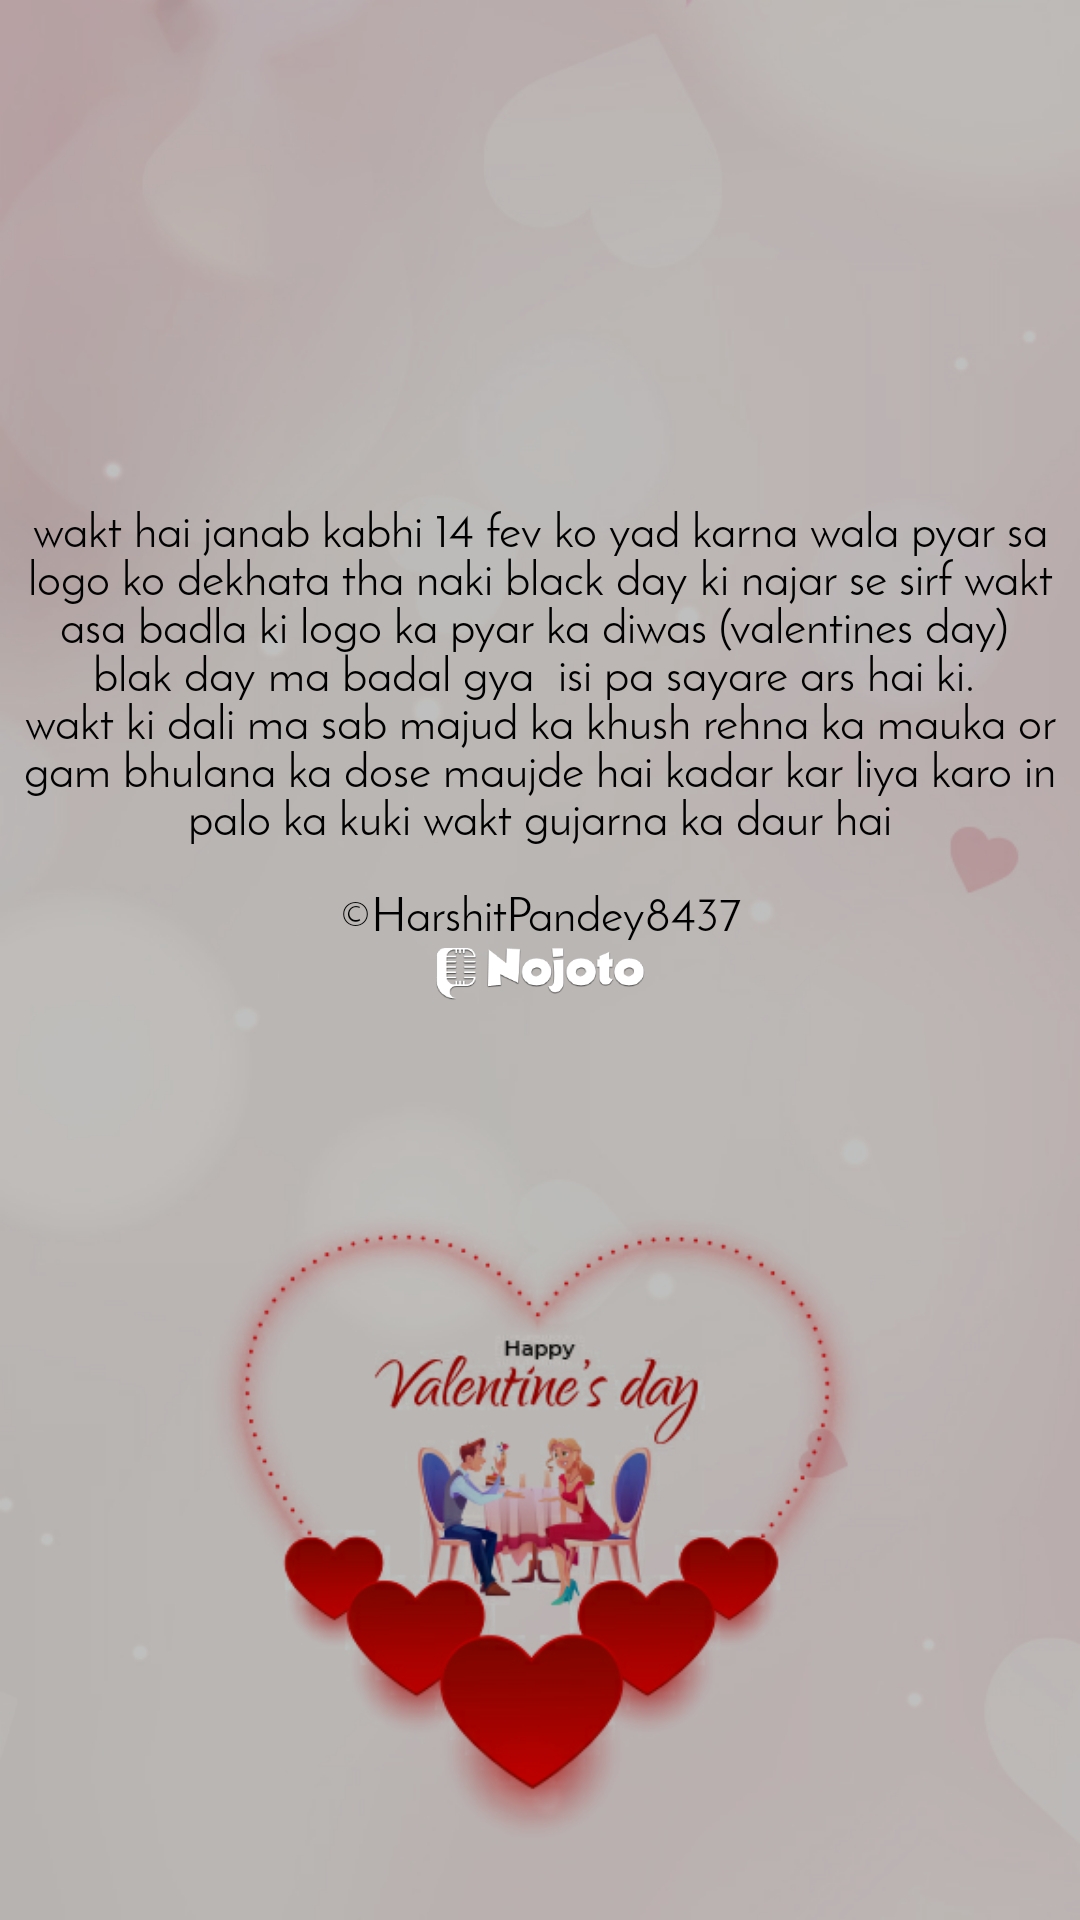 #blakday #indin #pulwama_attack #kabhi_khushi_kabhi_gam 😌

#ValentineDay